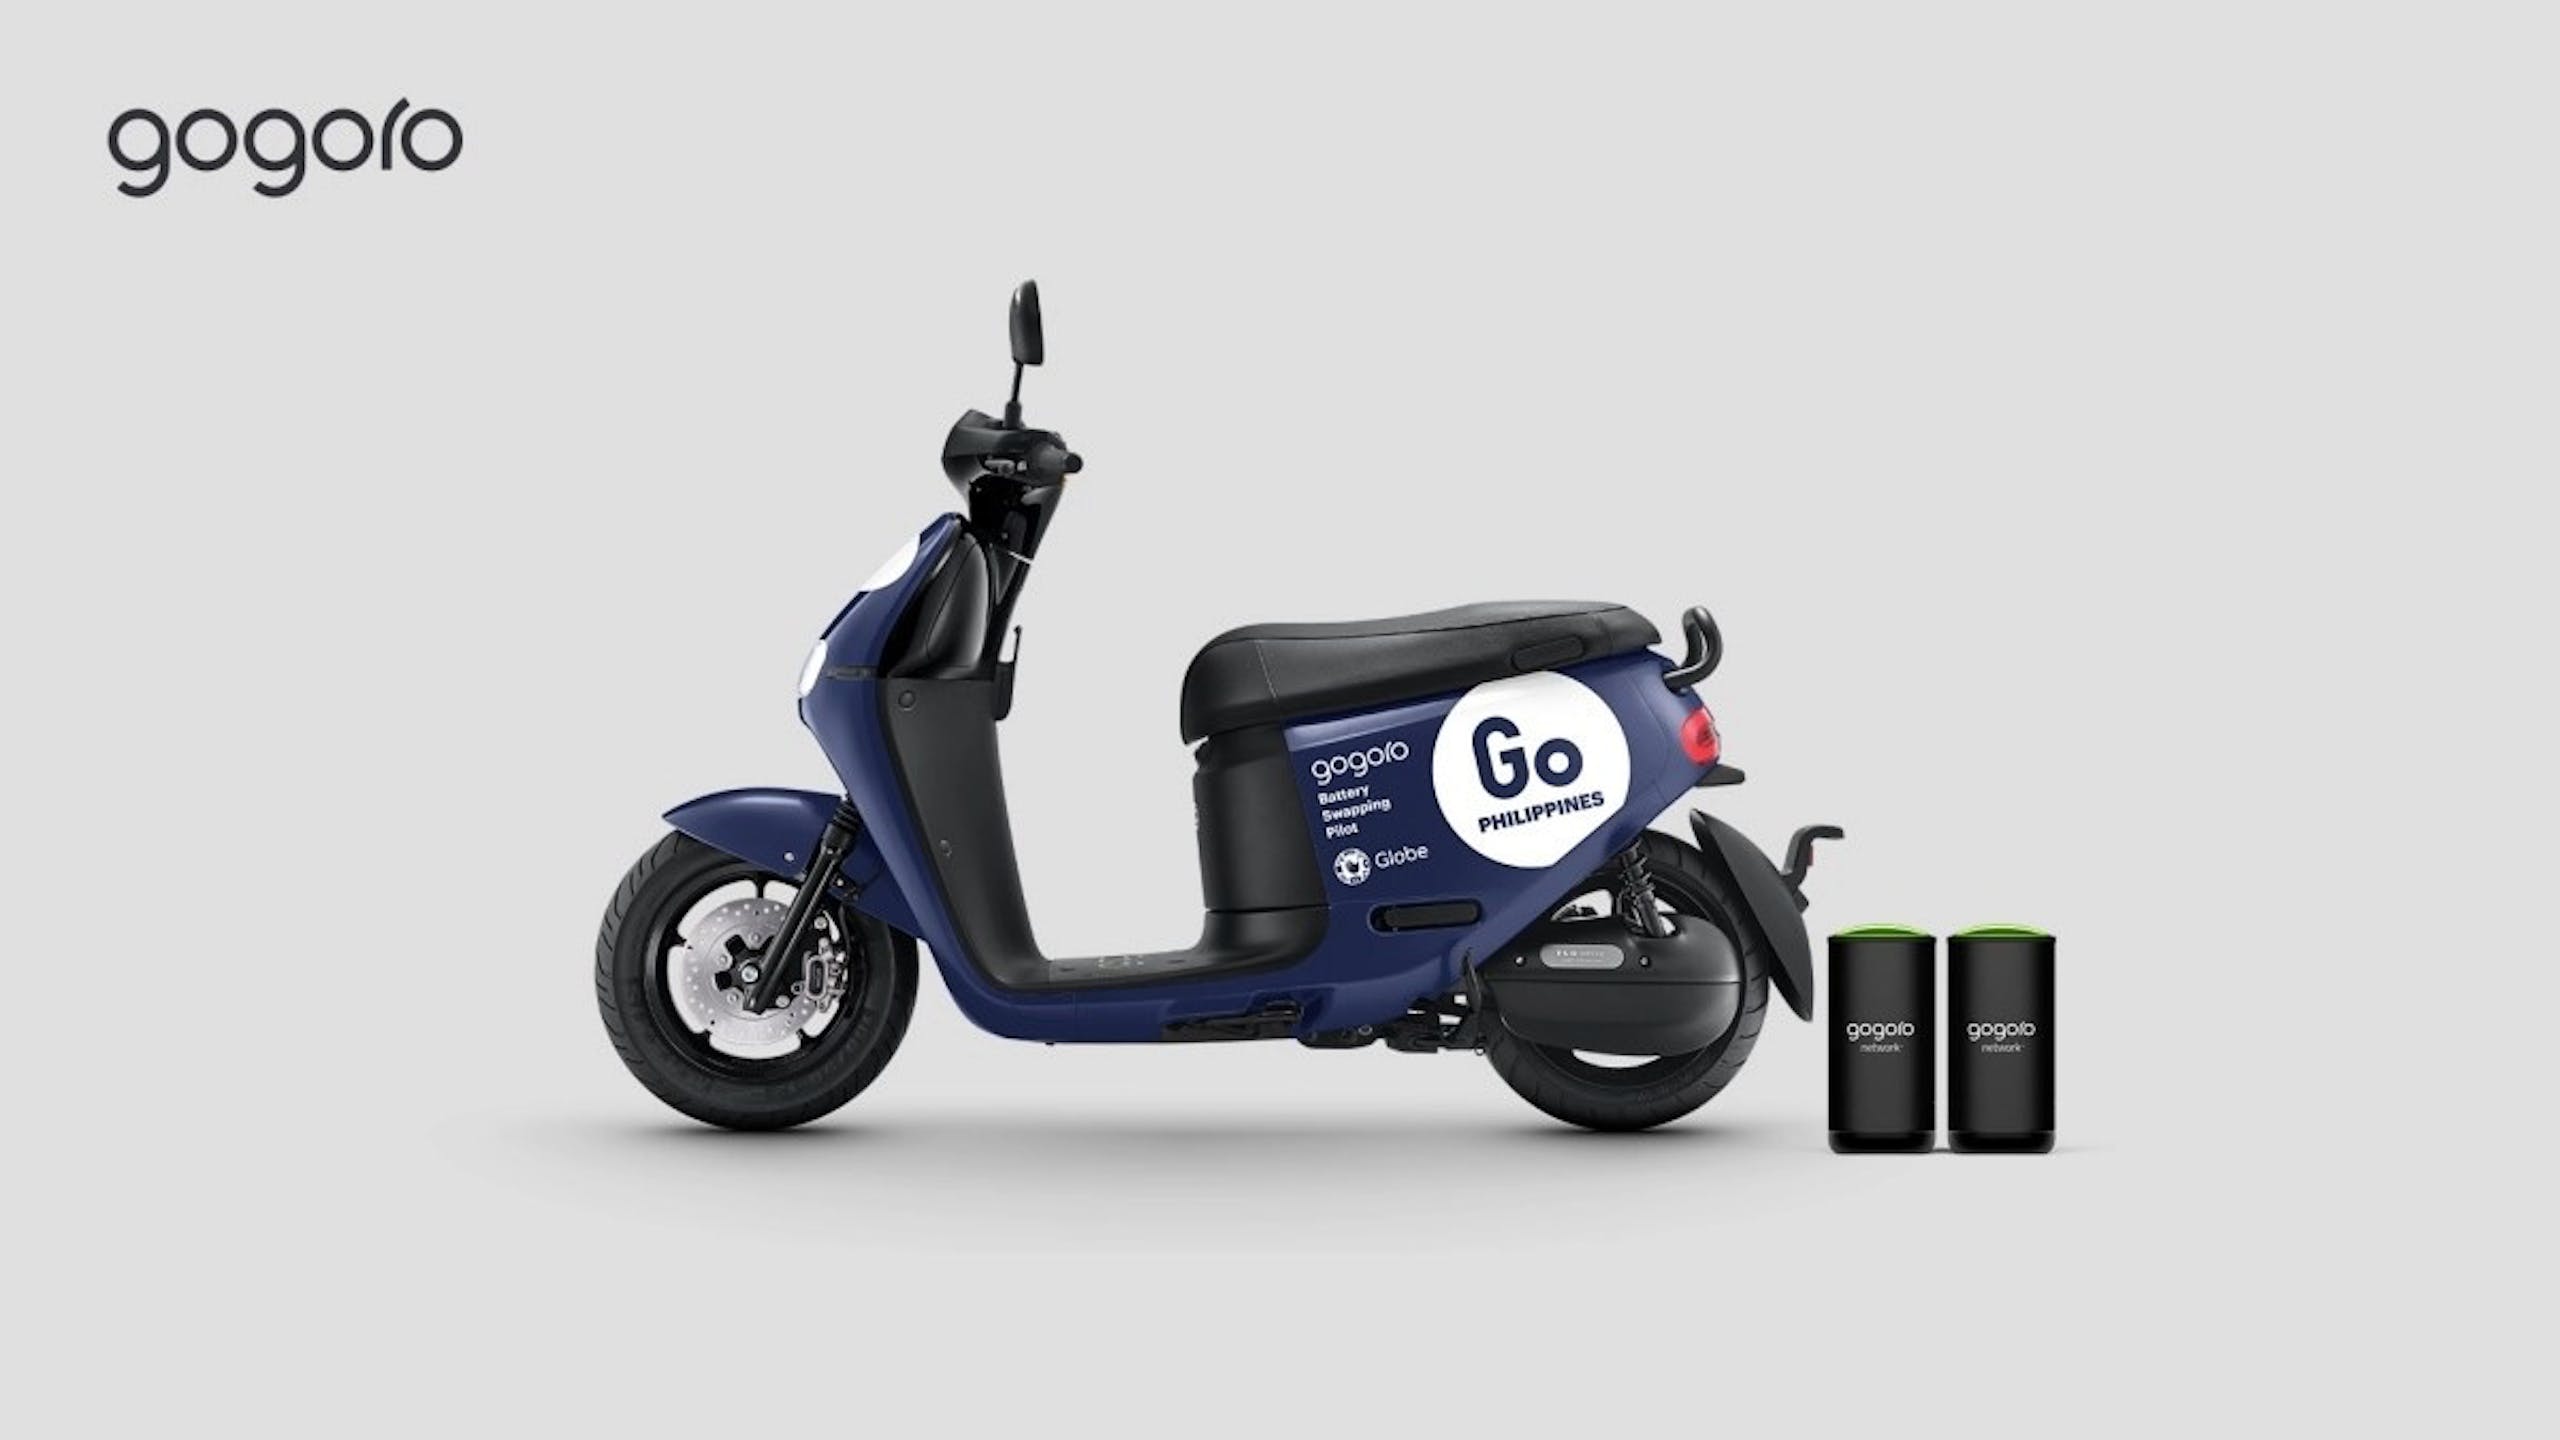 照片中提到了gogoro、gogoro、Battery，跟五郎郎有關，包含了gogoro 價格 2021、電動車、摩托車、五郎郎